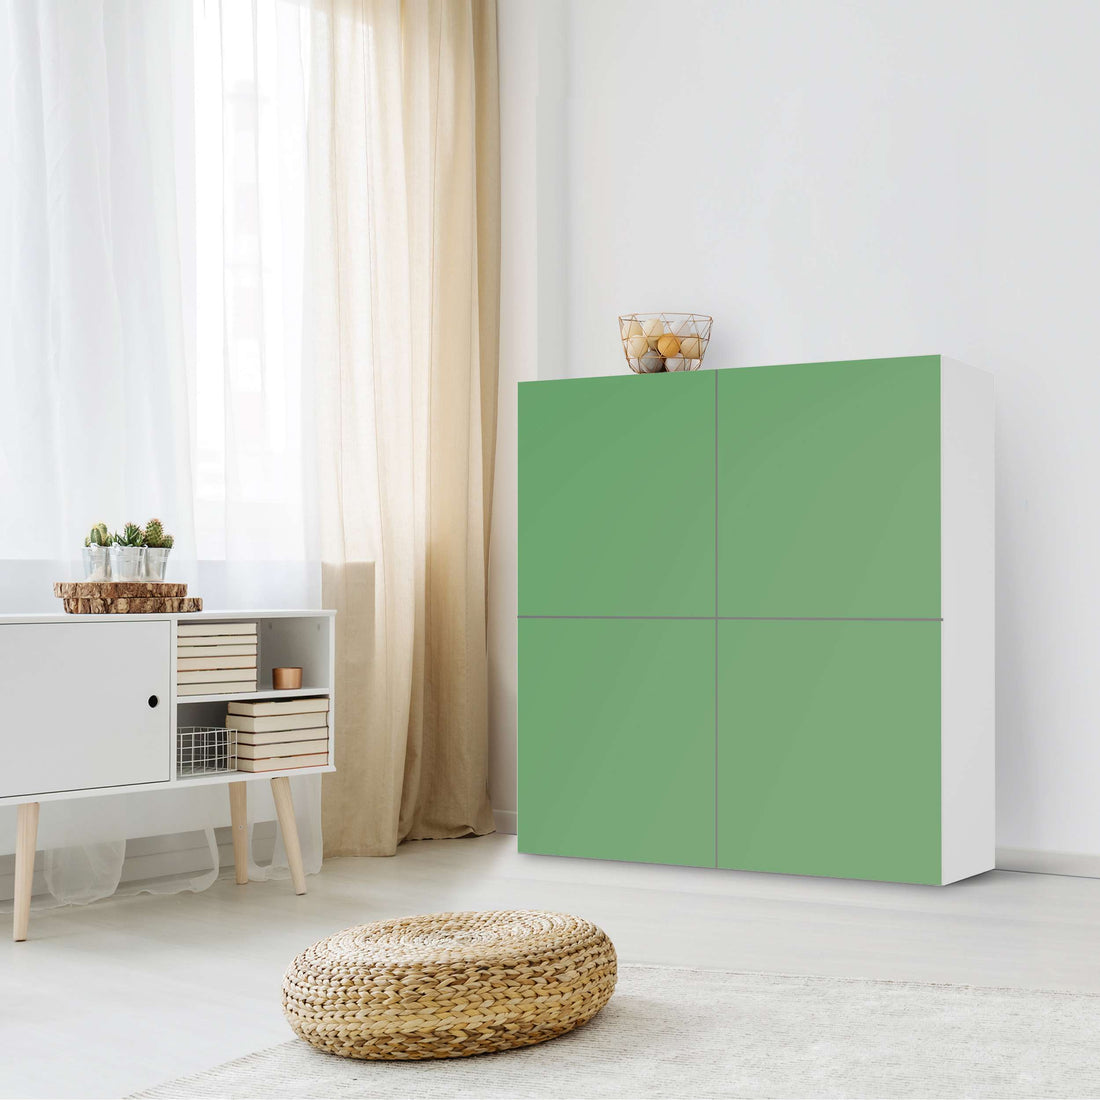 Klebefolie für Schränke Grün Light - IKEA Besta Schrank Quadratisch 4 Türen - Wohnzimmer